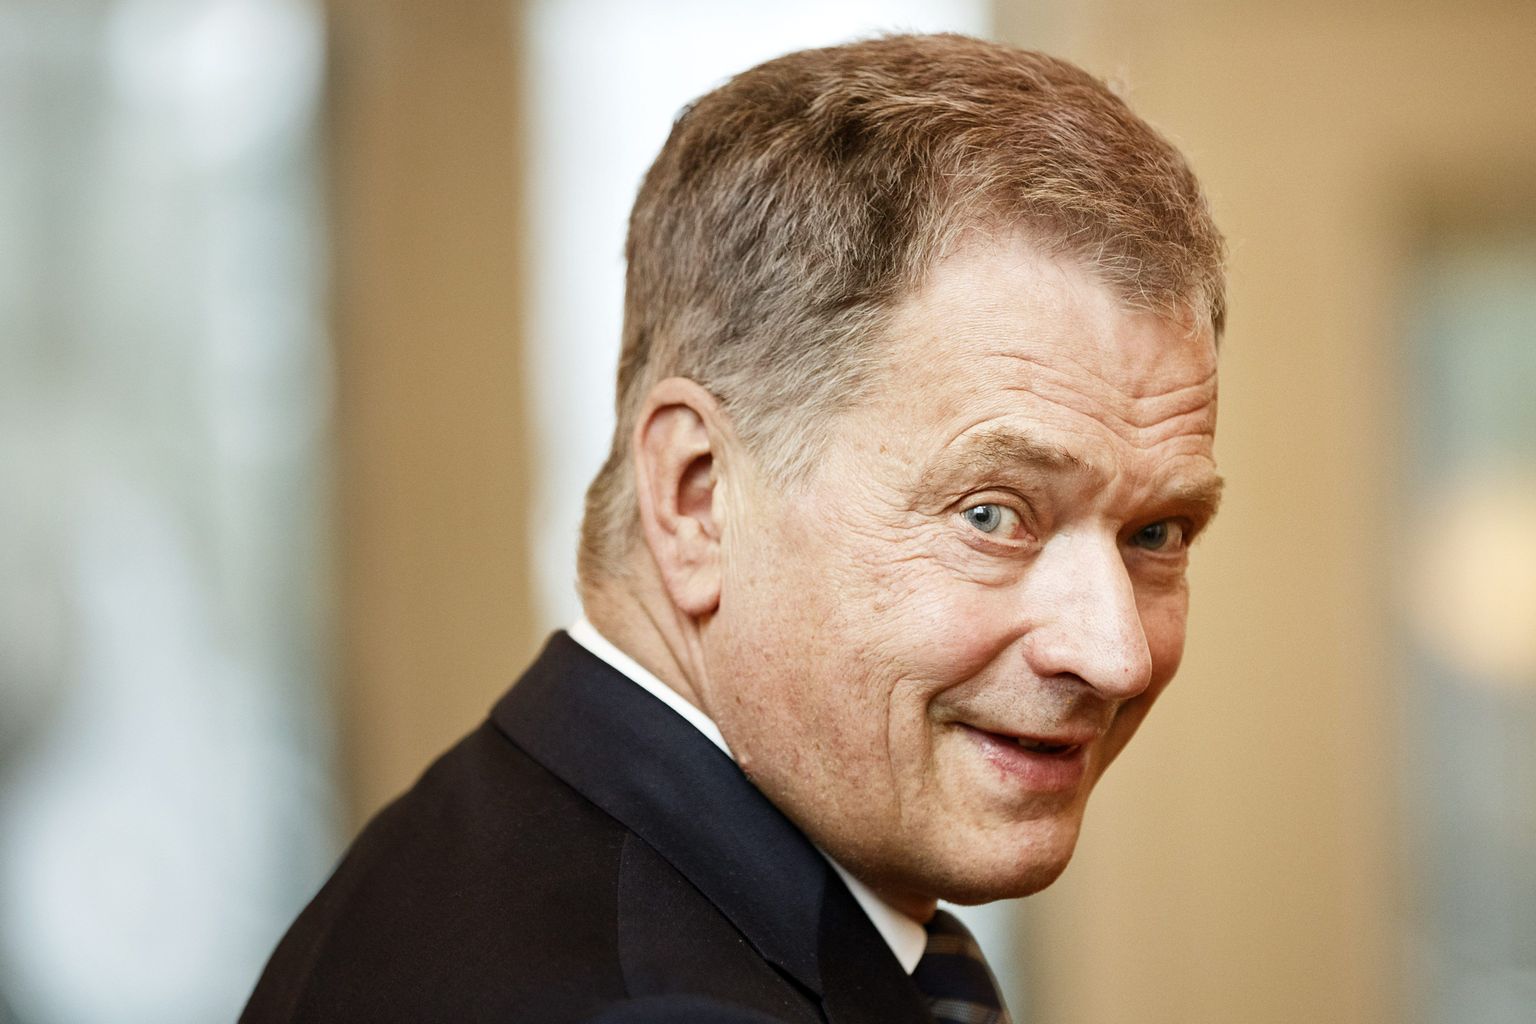 Soome president Sauli Niinistö